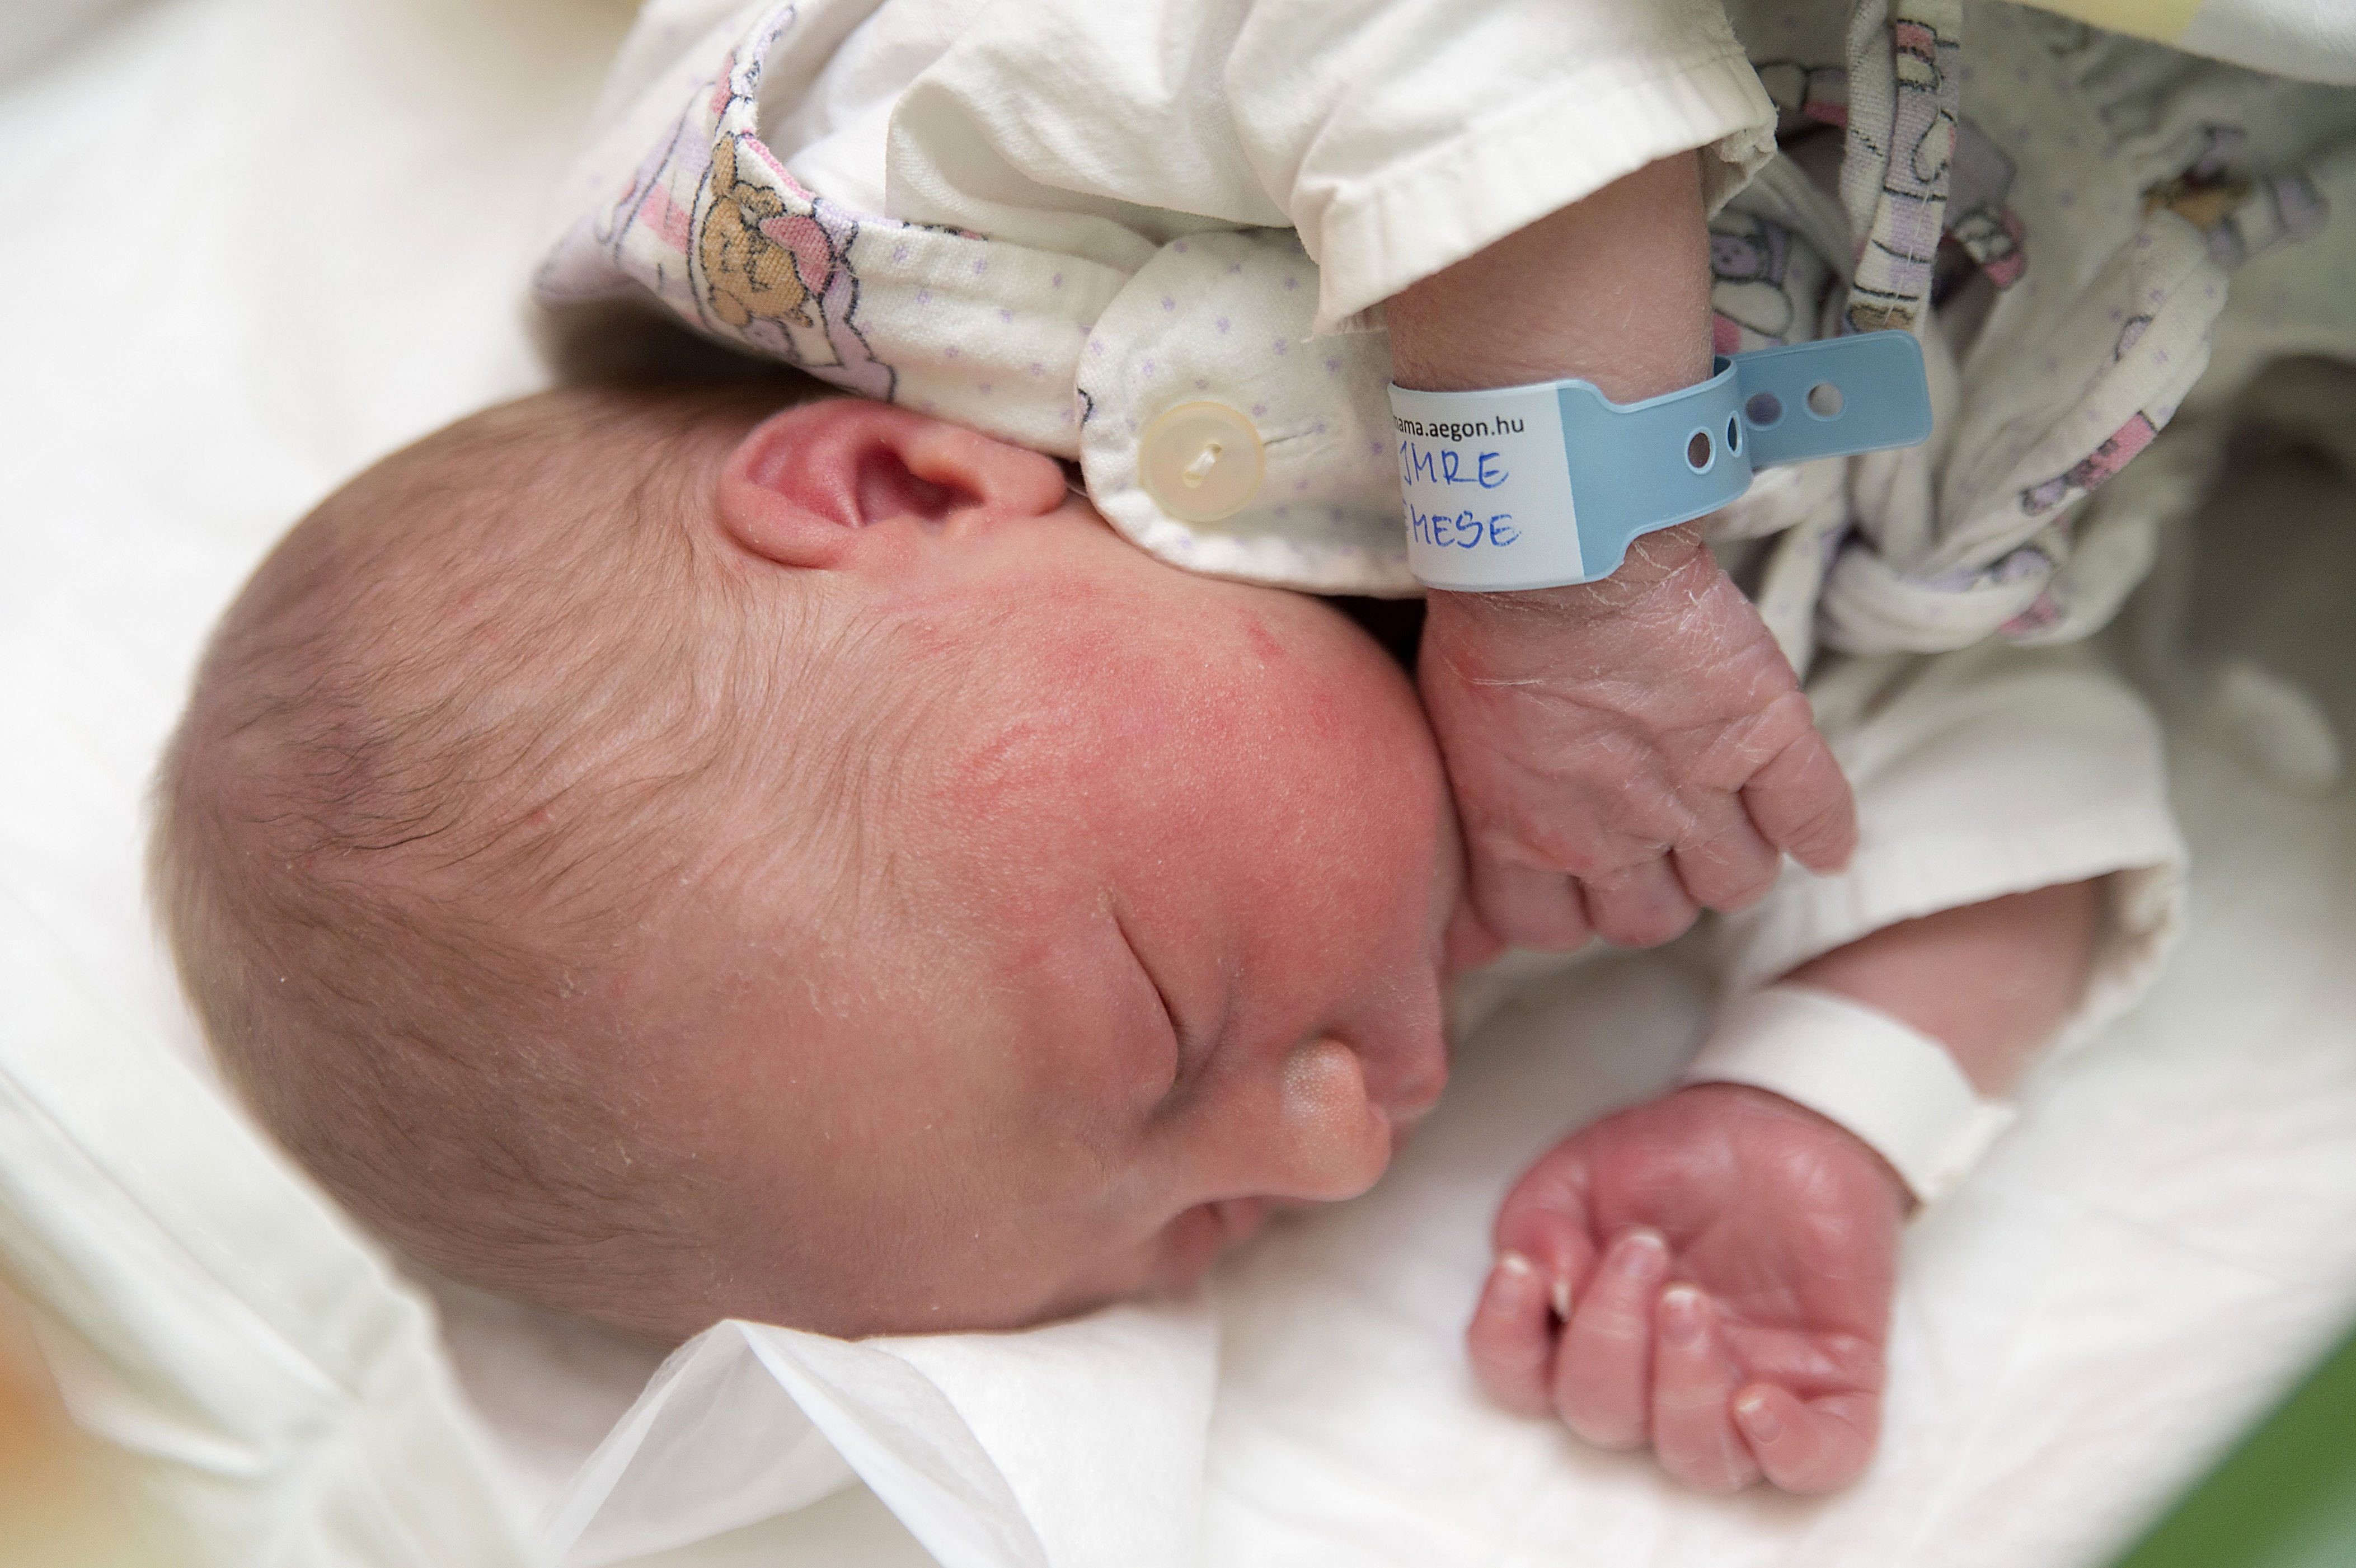 nyomozás indult a nyíregyházi kórházban szülés után elhunyt egyik kismama ügyében